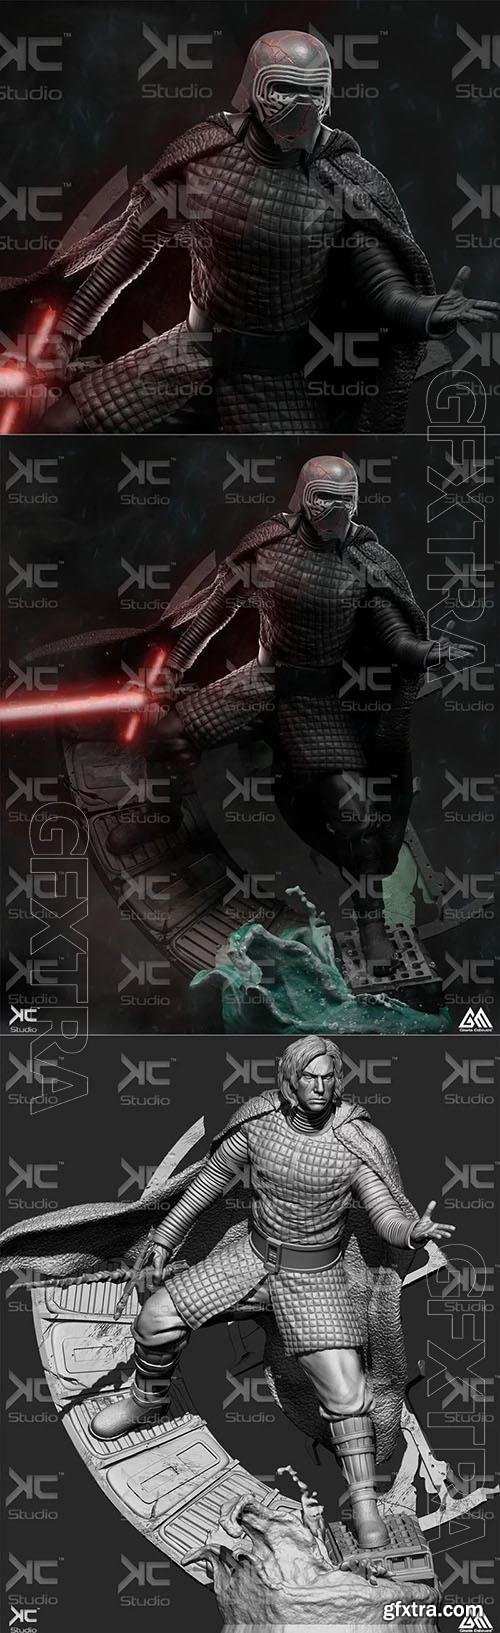 Kylo Ren - Star Wars Fan Art - Kc studio - 3D Print